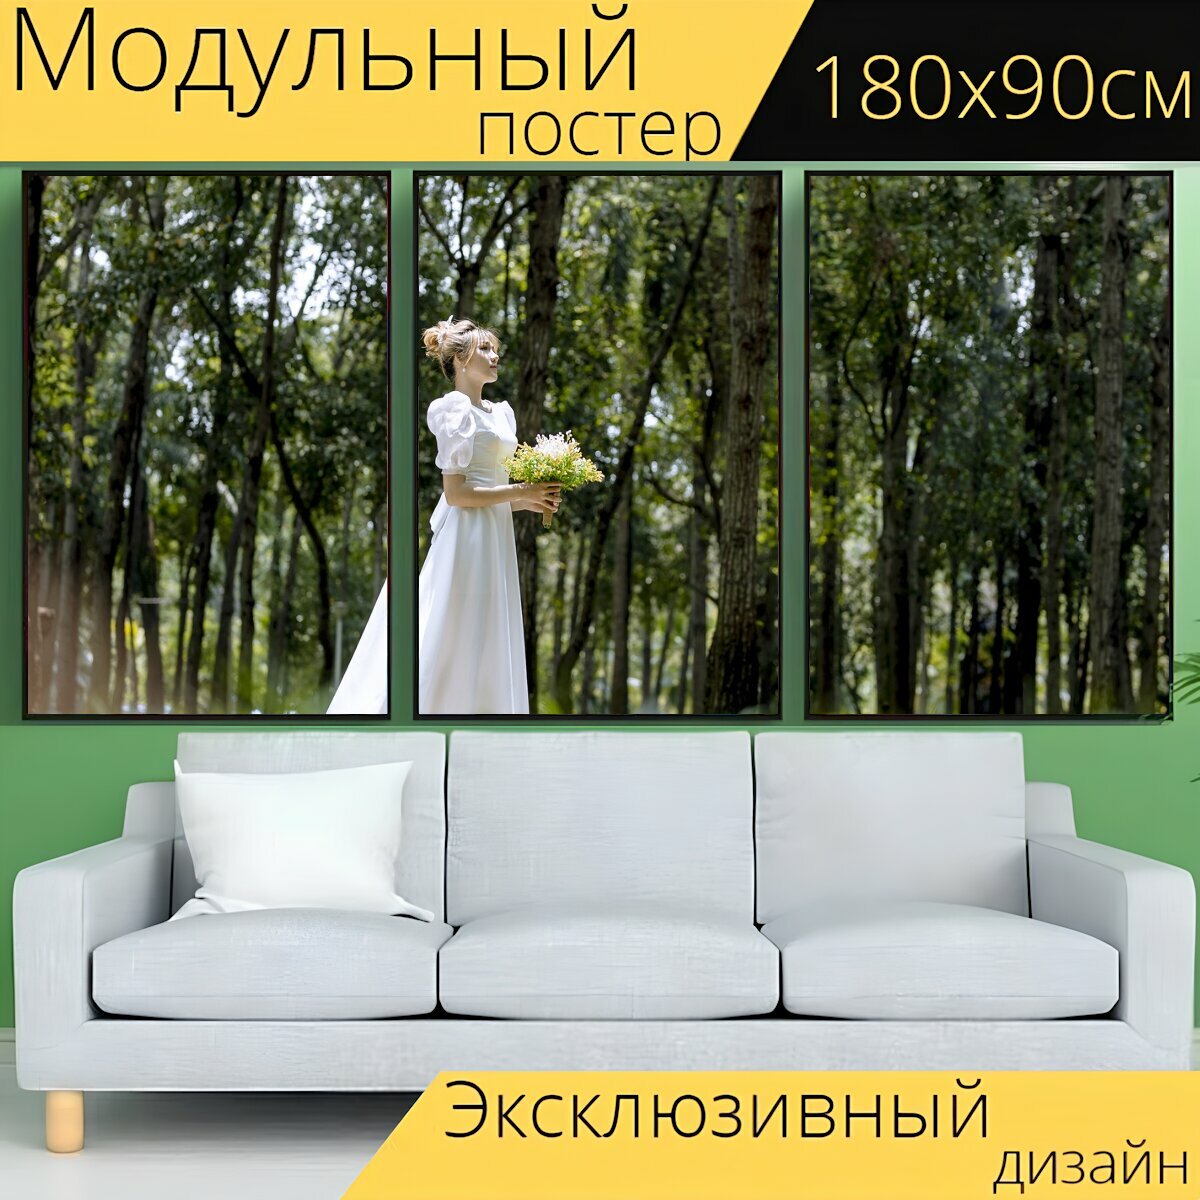 Модульный постер "Невеста, мода, свадебное платье" 180 x 90 см. для интерьера